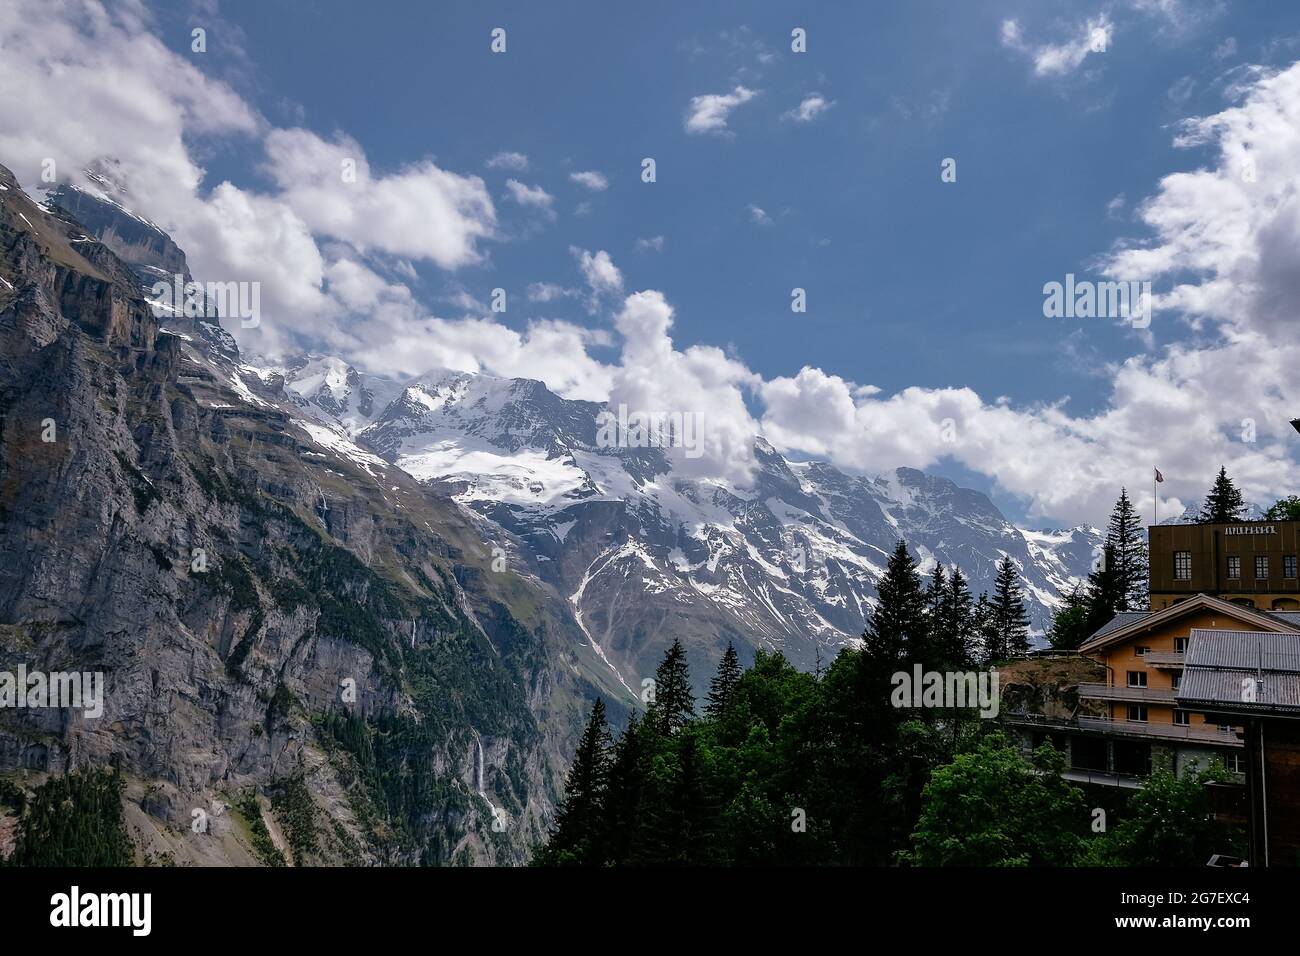 Panorama-Luftaufnahme des Lauterbrunnentals vom kleinen Dorf Mürren - Jungfrau Region im Sommer - Schweizer Alpen, Schweiz Stockfoto